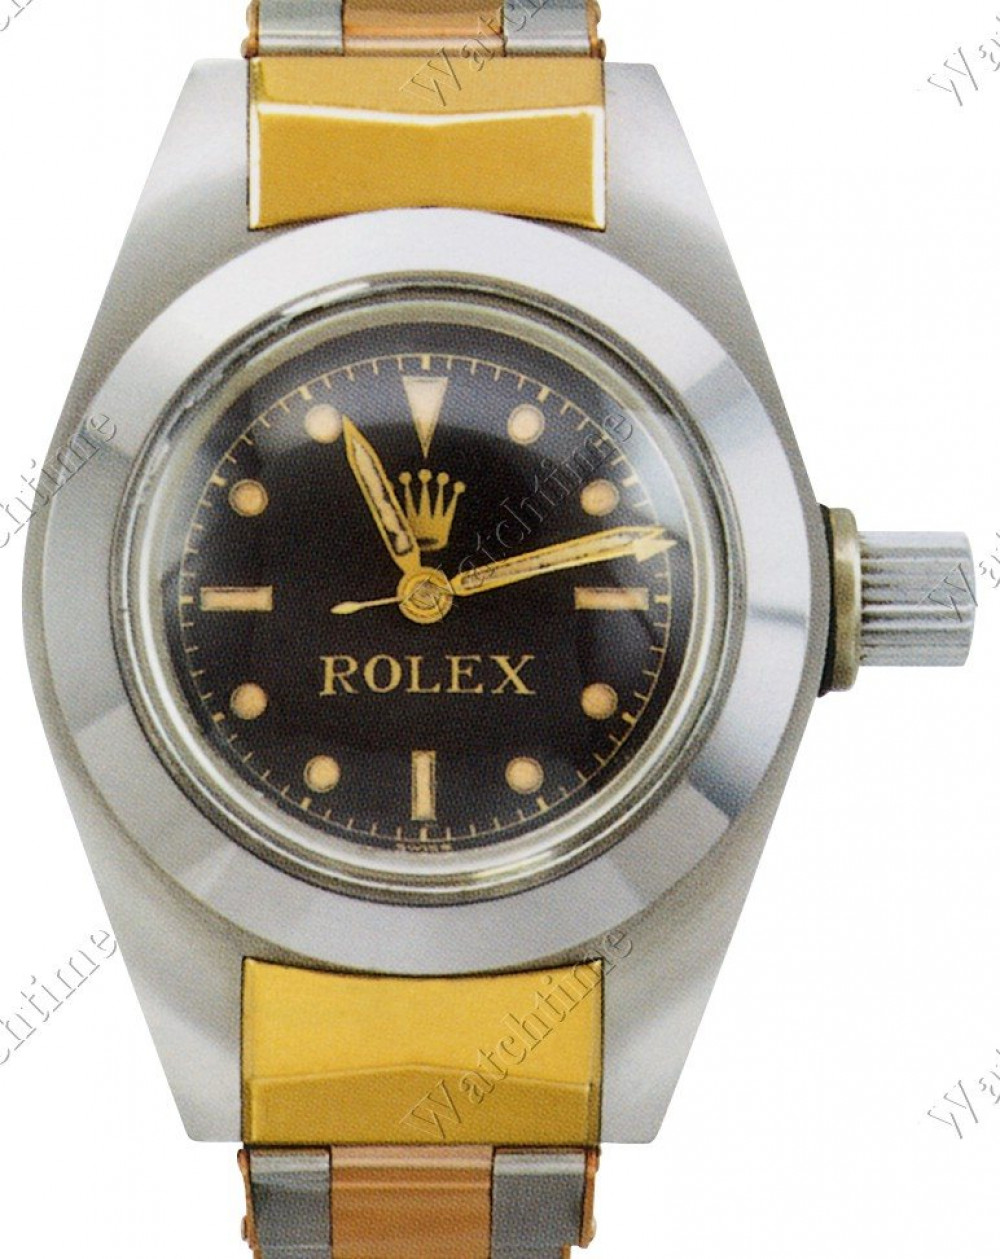 Zegarek firmy Rolex, model Oyster Deep Sea Special No. 1